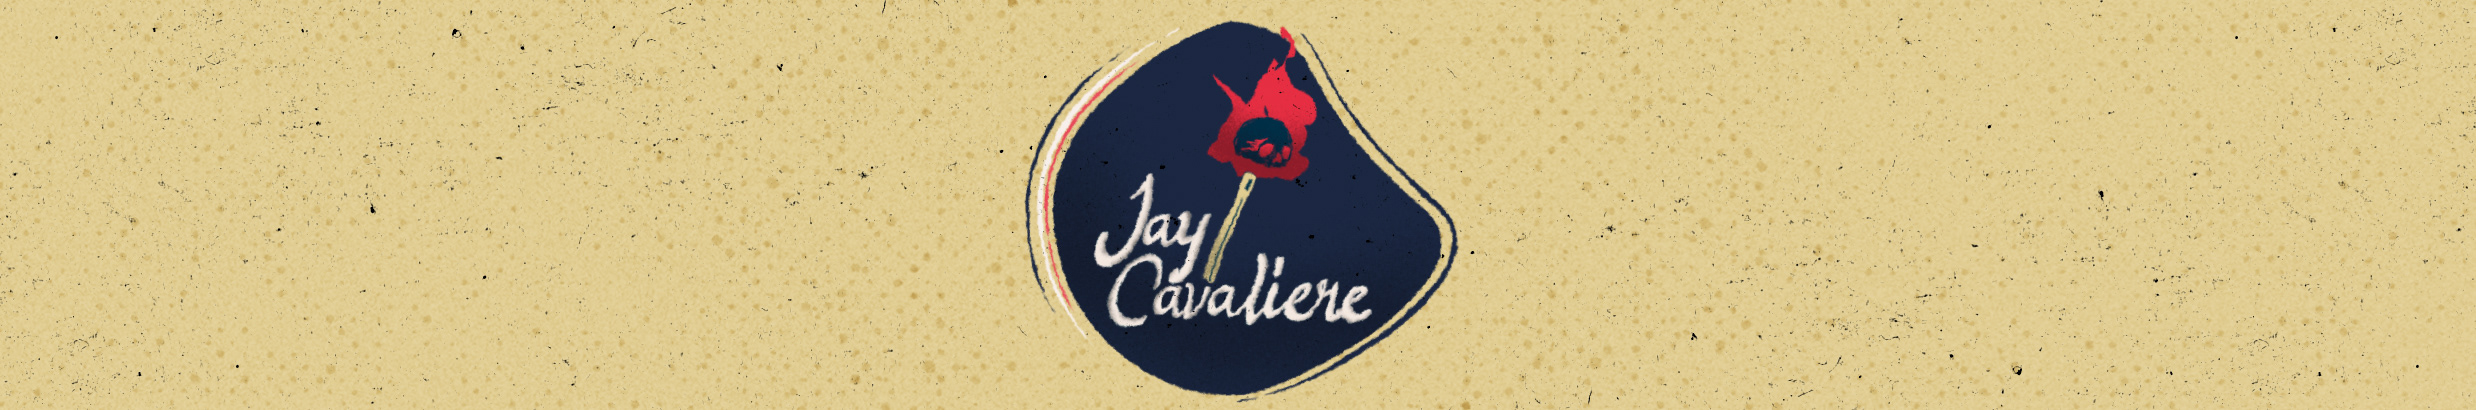 Bannière de profil de Jay Cavaliere